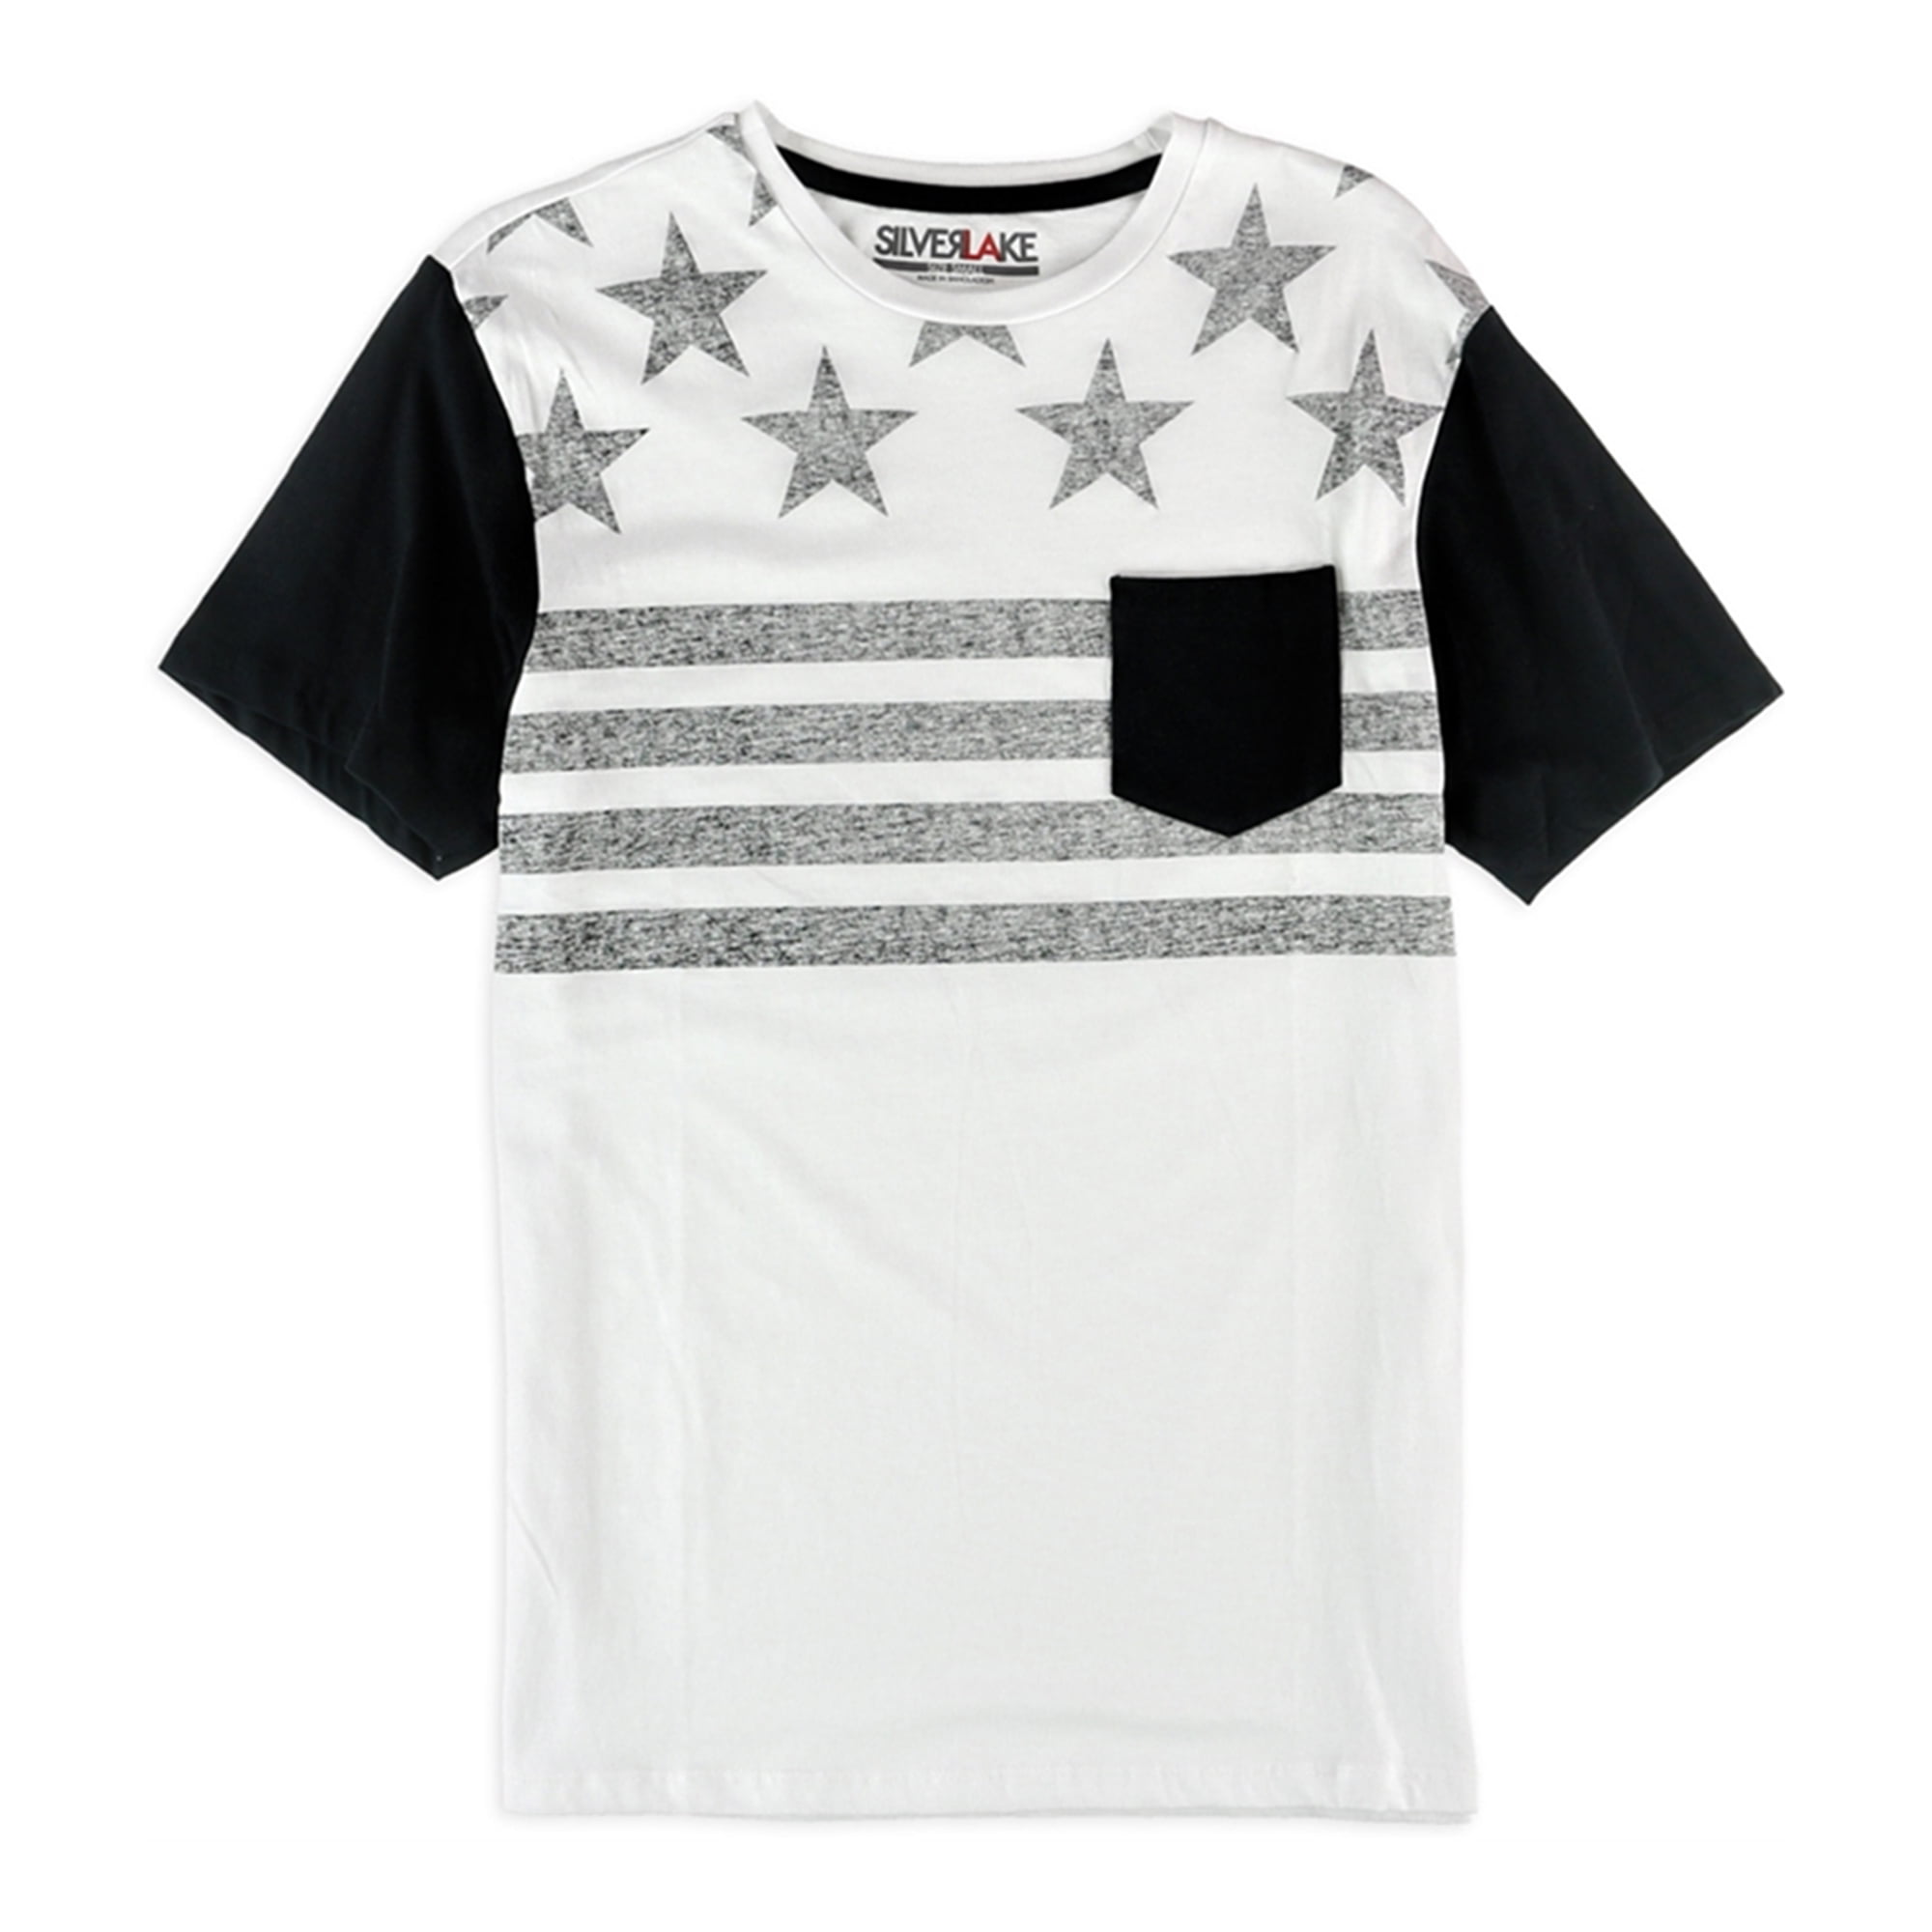 Silver Lake Mens Tweed Stripe Pocket Graphic T-Shirt Black Small